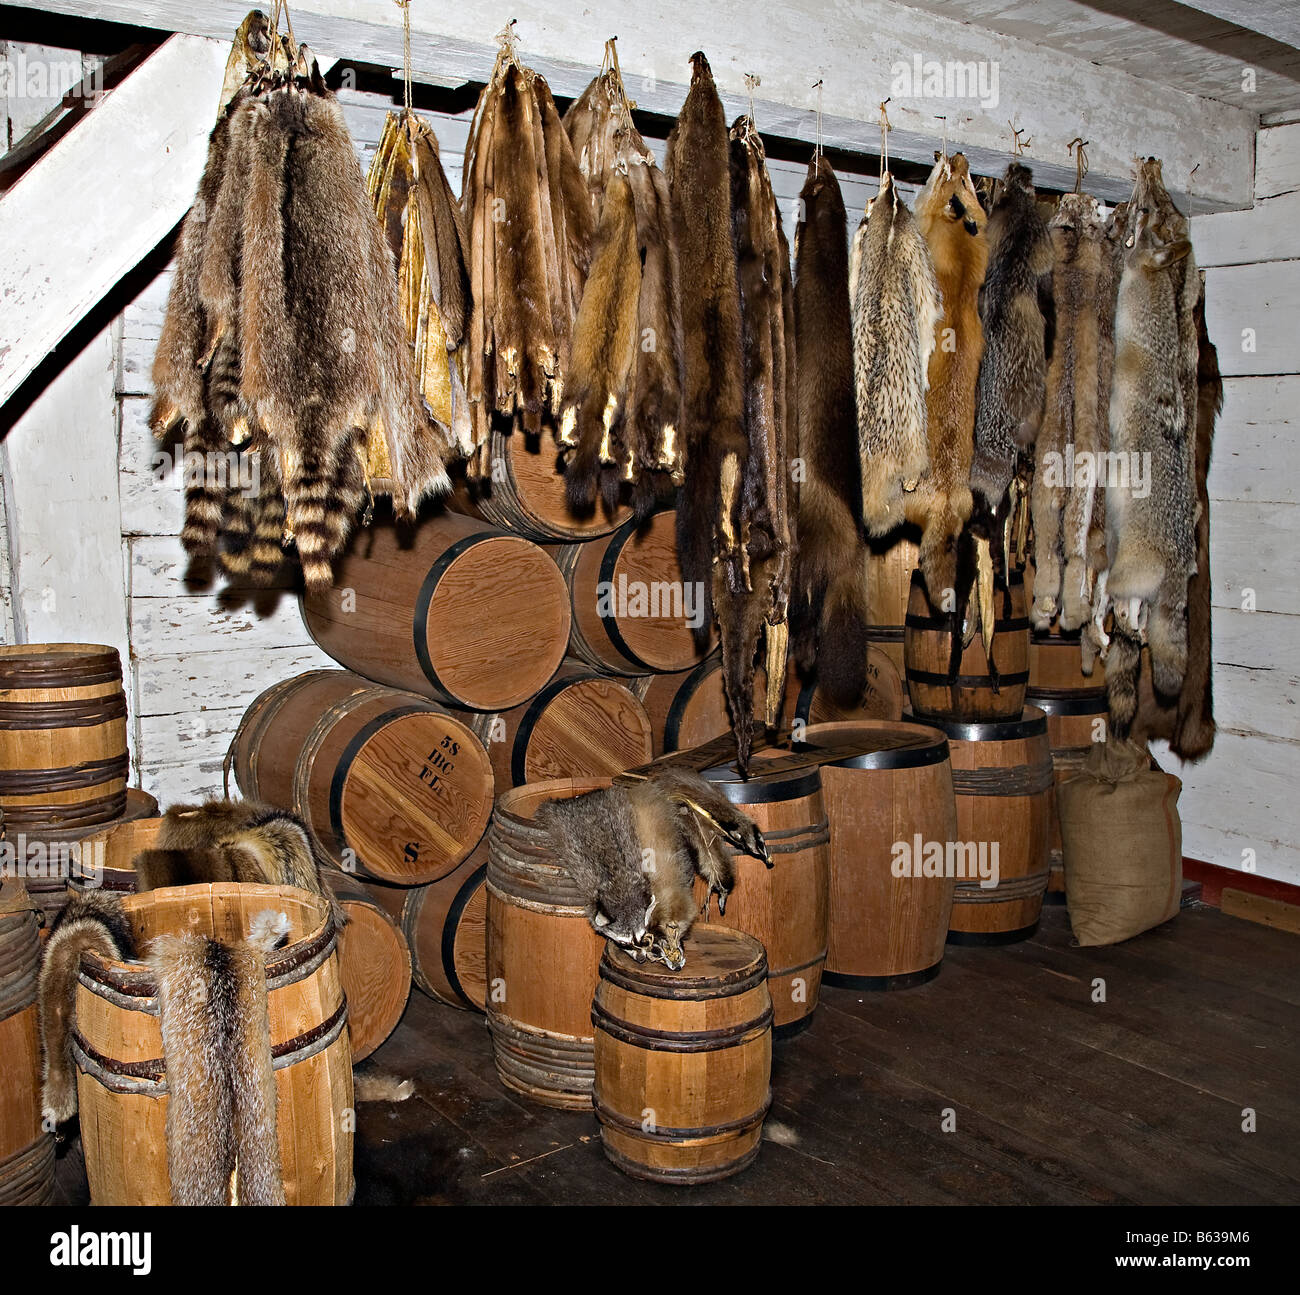 Pelliccia pellicce e barili all'interno del magazzino Fort Langley National Historic Site Fort Langley Canada. Foto Stock